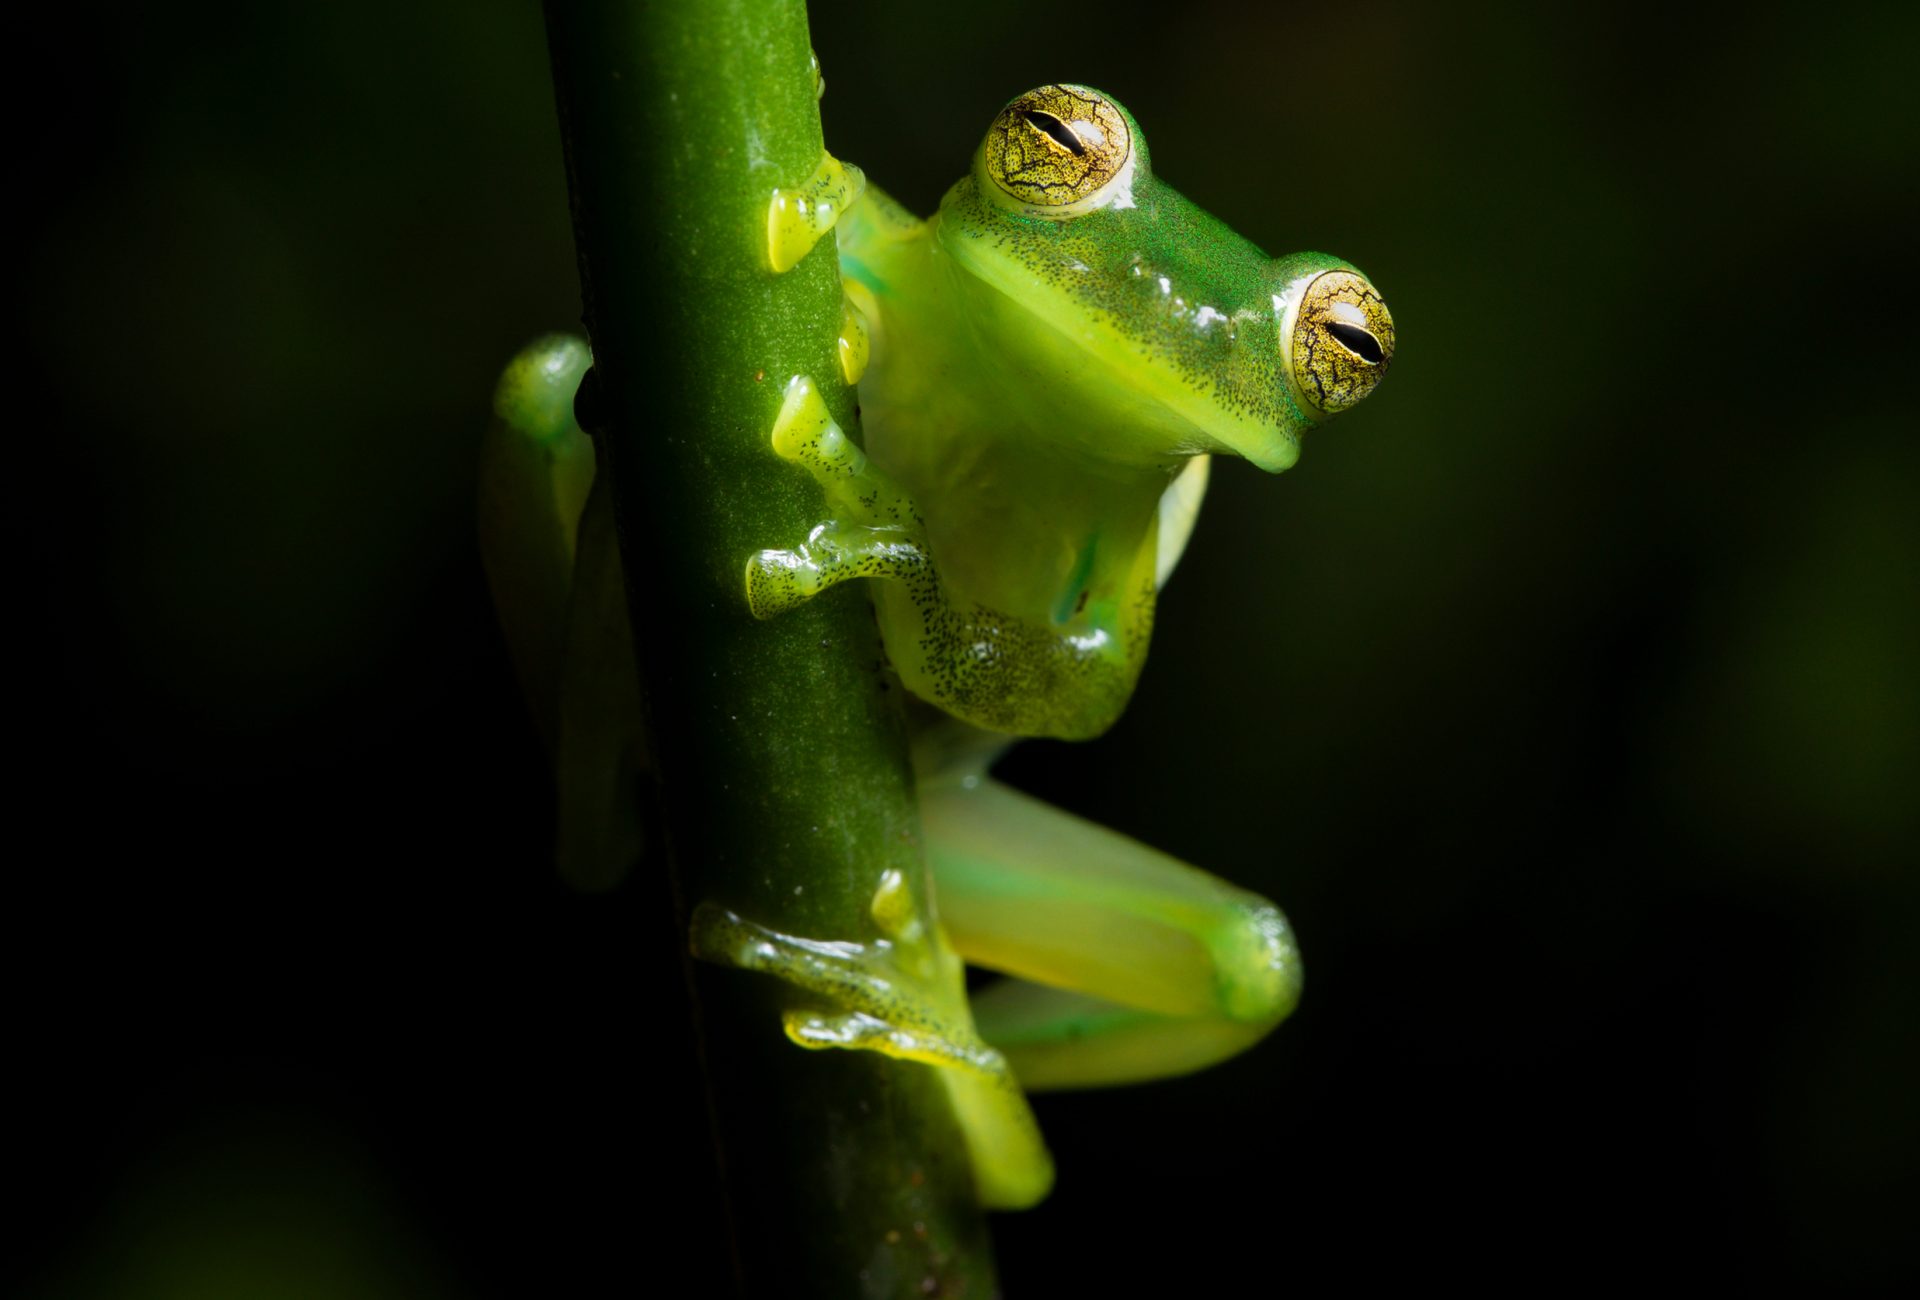 https://www.rainforesttrust.org/app/uploads/2021/10/Ecuador-Reserva-Glass-Frog-by-Ana-Dracaena-Shutterstock-scaled-aspect-ratio-1920-1300-1.jpg